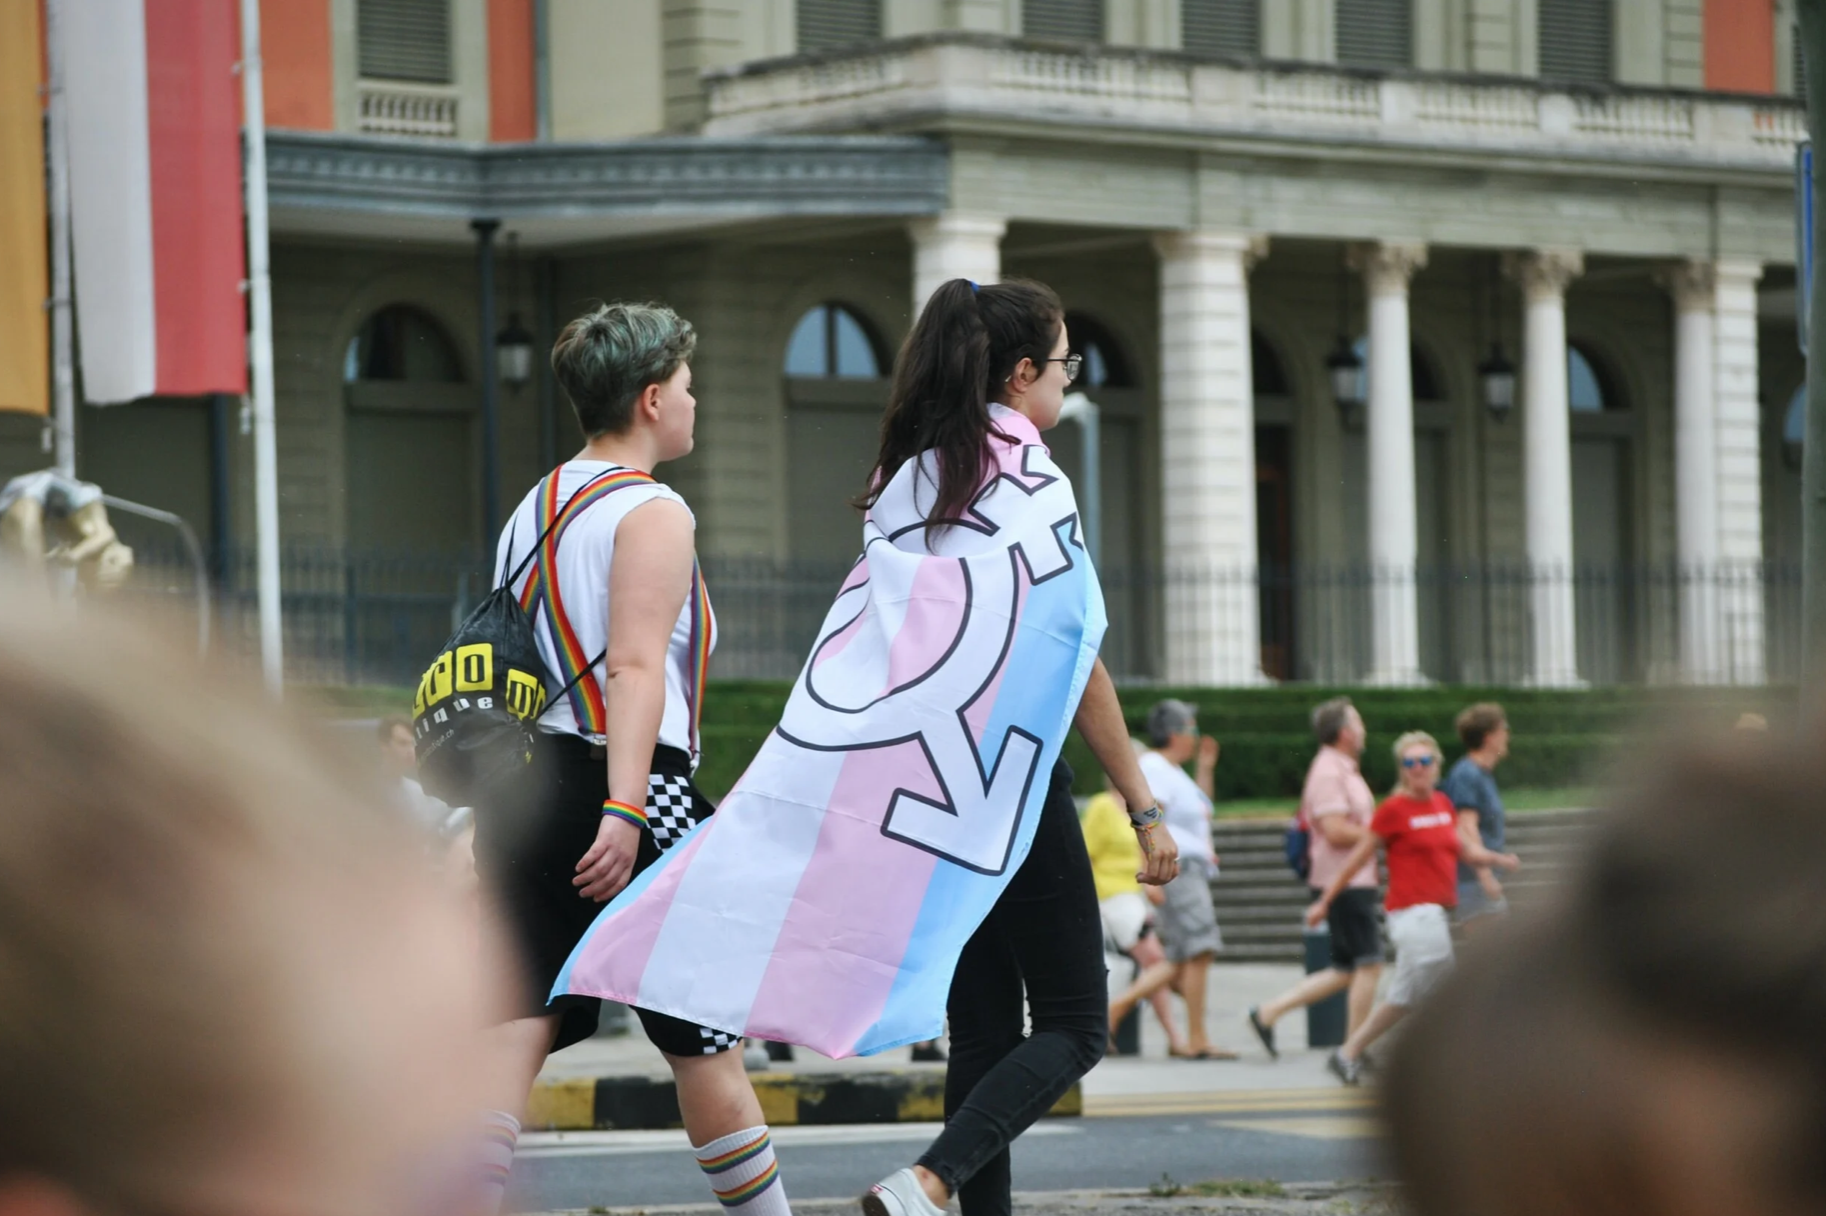 ΣΥΔ: Τα κόμματα να δεσμευτούν για την πλήρη κατοχύρωση των τρανς δικαιωμάτων και ελευθεριών